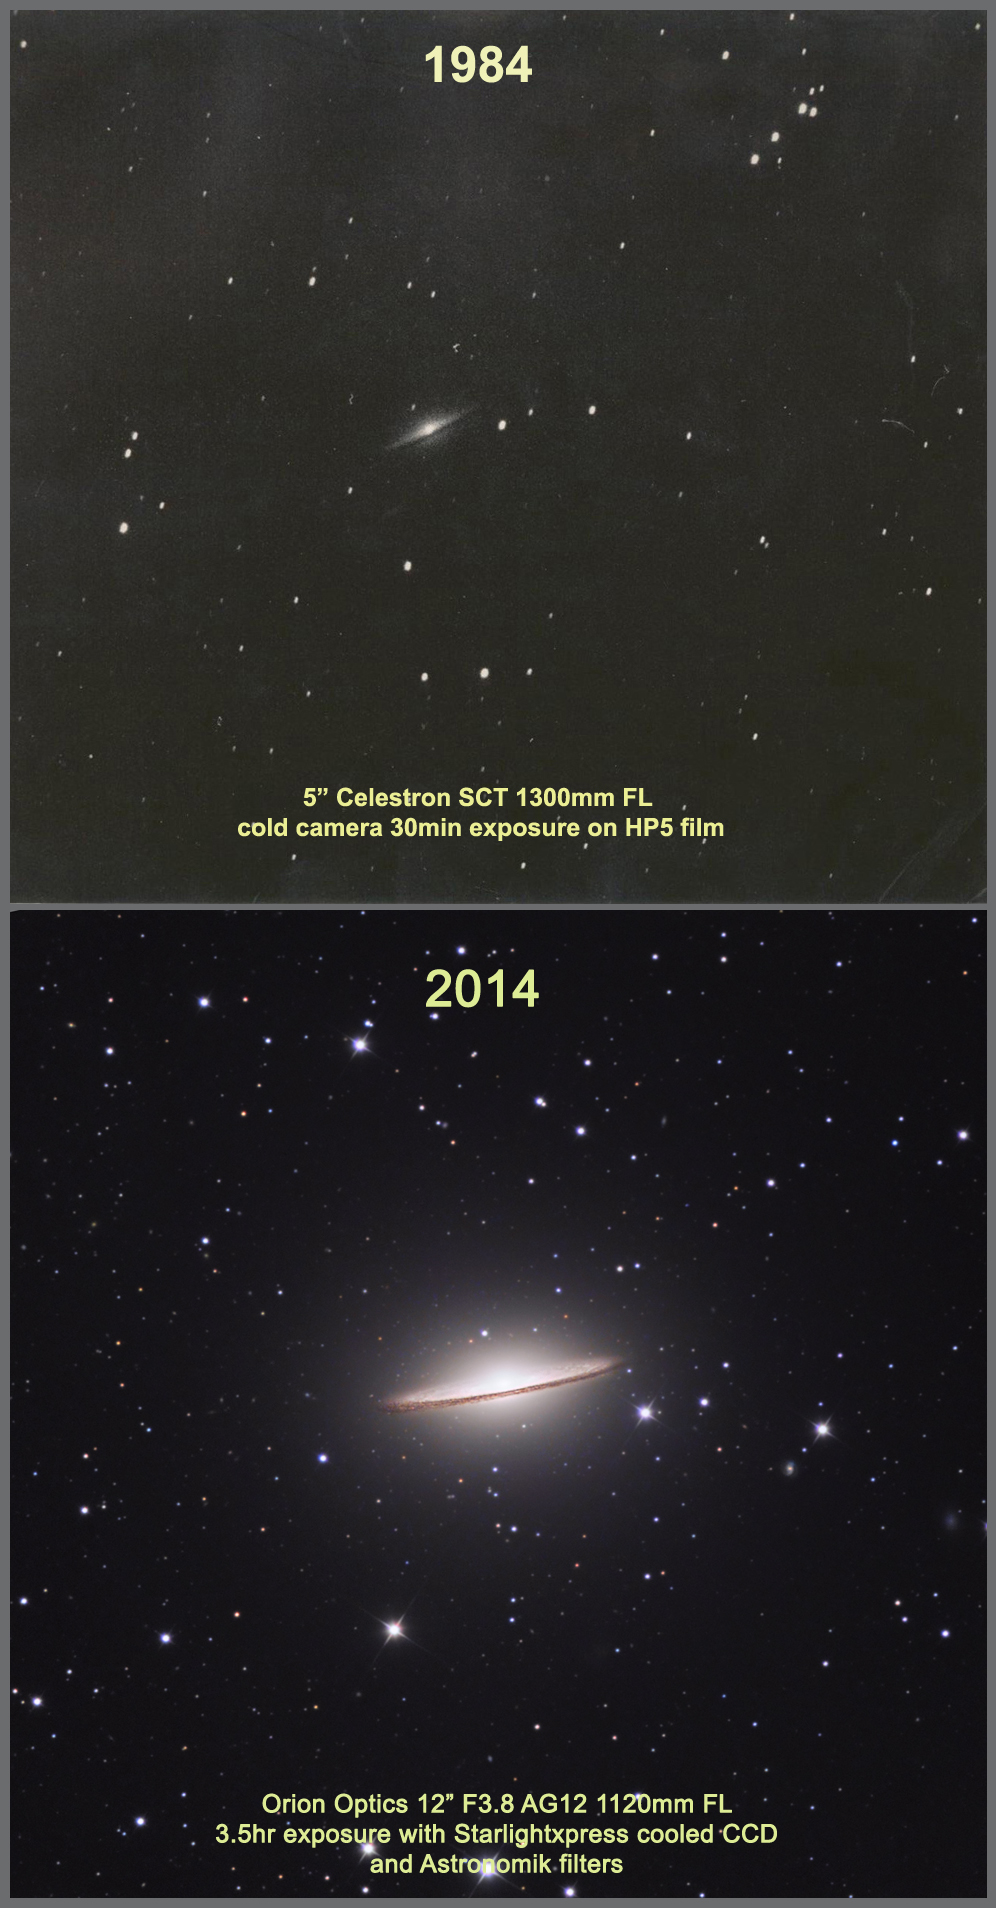 M104 - taken exactly 30 years apart